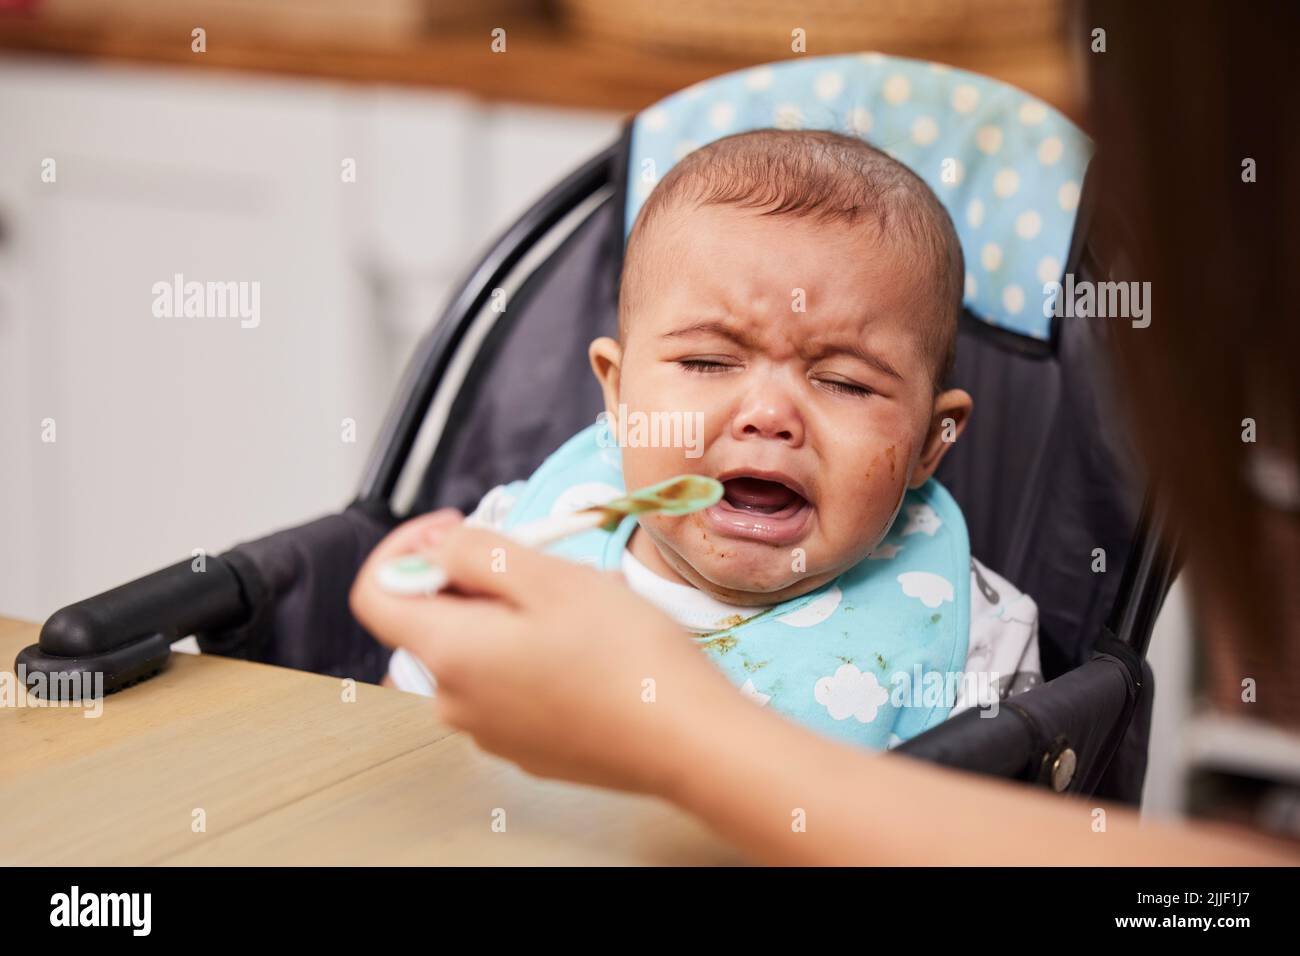 Ich bin hungrig, aber nicht dafür. Ein Baby weint, während es von seiner Mutter gefüttert wird. Stockfoto